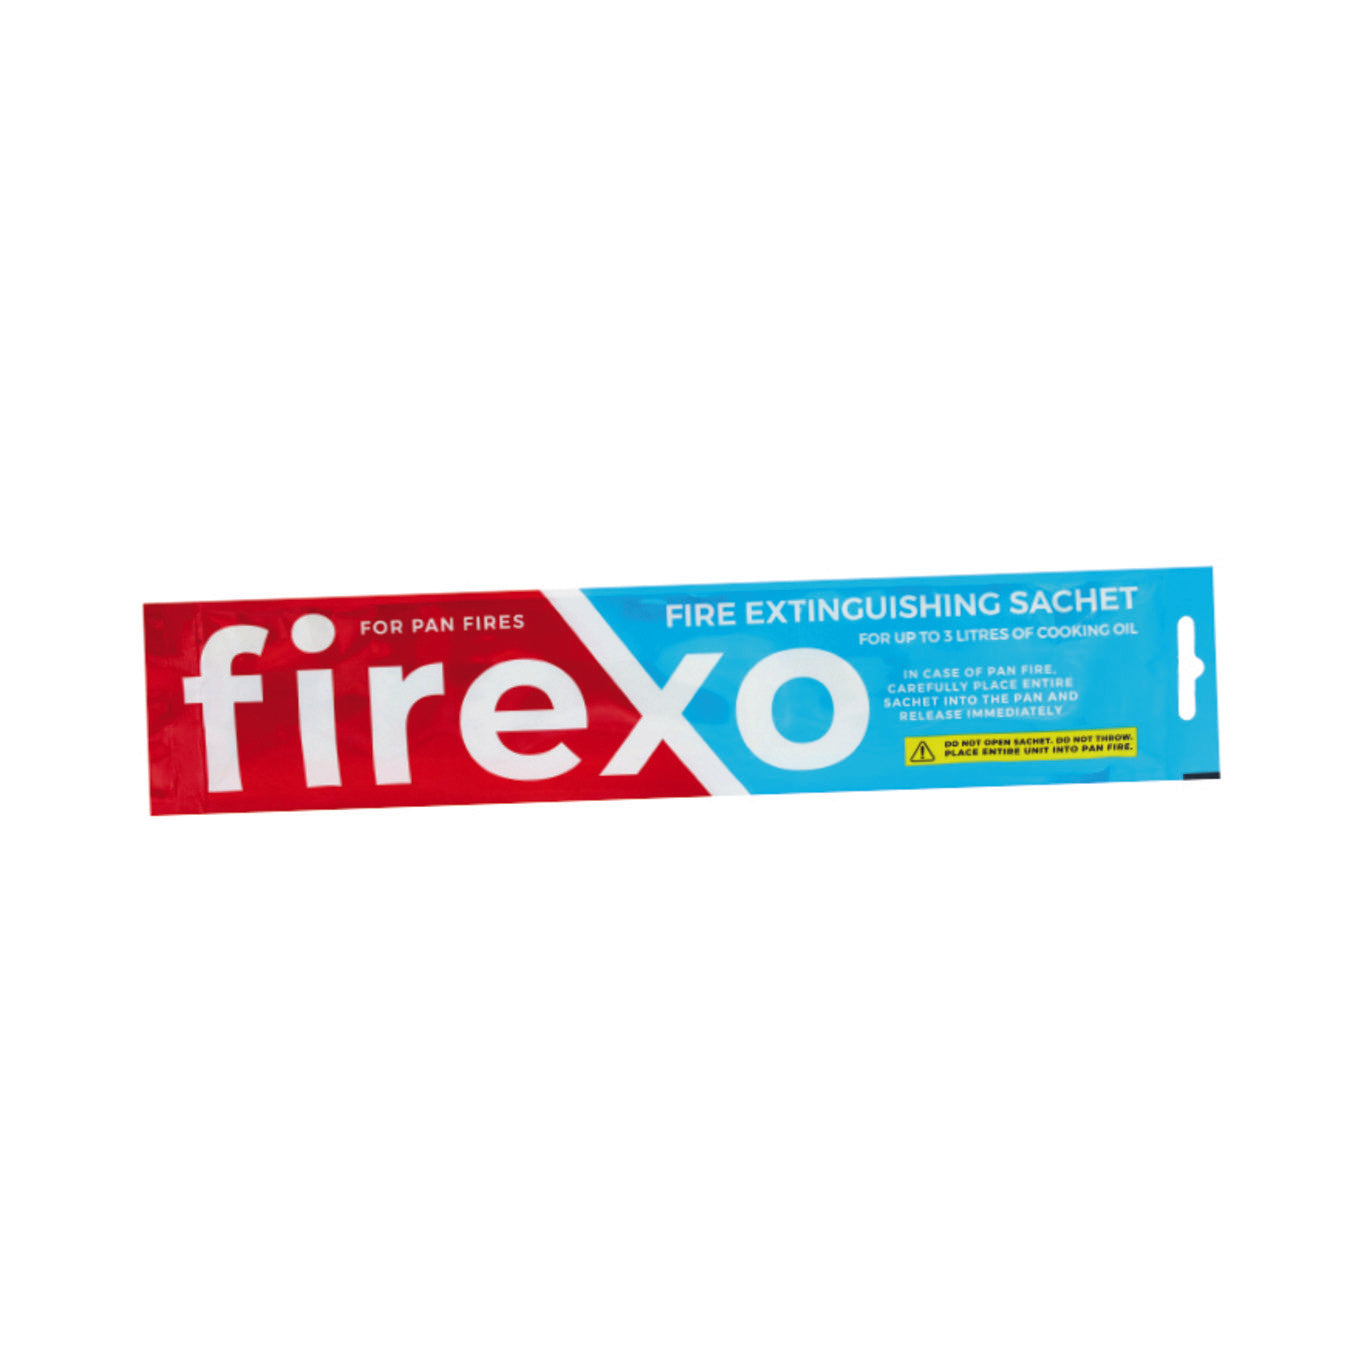 Zestaw 3  saszetek Firexo- saszetka z substancja gaśnicą Firexo Pan, alternatywa dla koca gaśniczego, do wszystkich pożarów na patelniach olejowych i tłuszczowych w kuchni, grillu, kempingu, gaśnicy. 